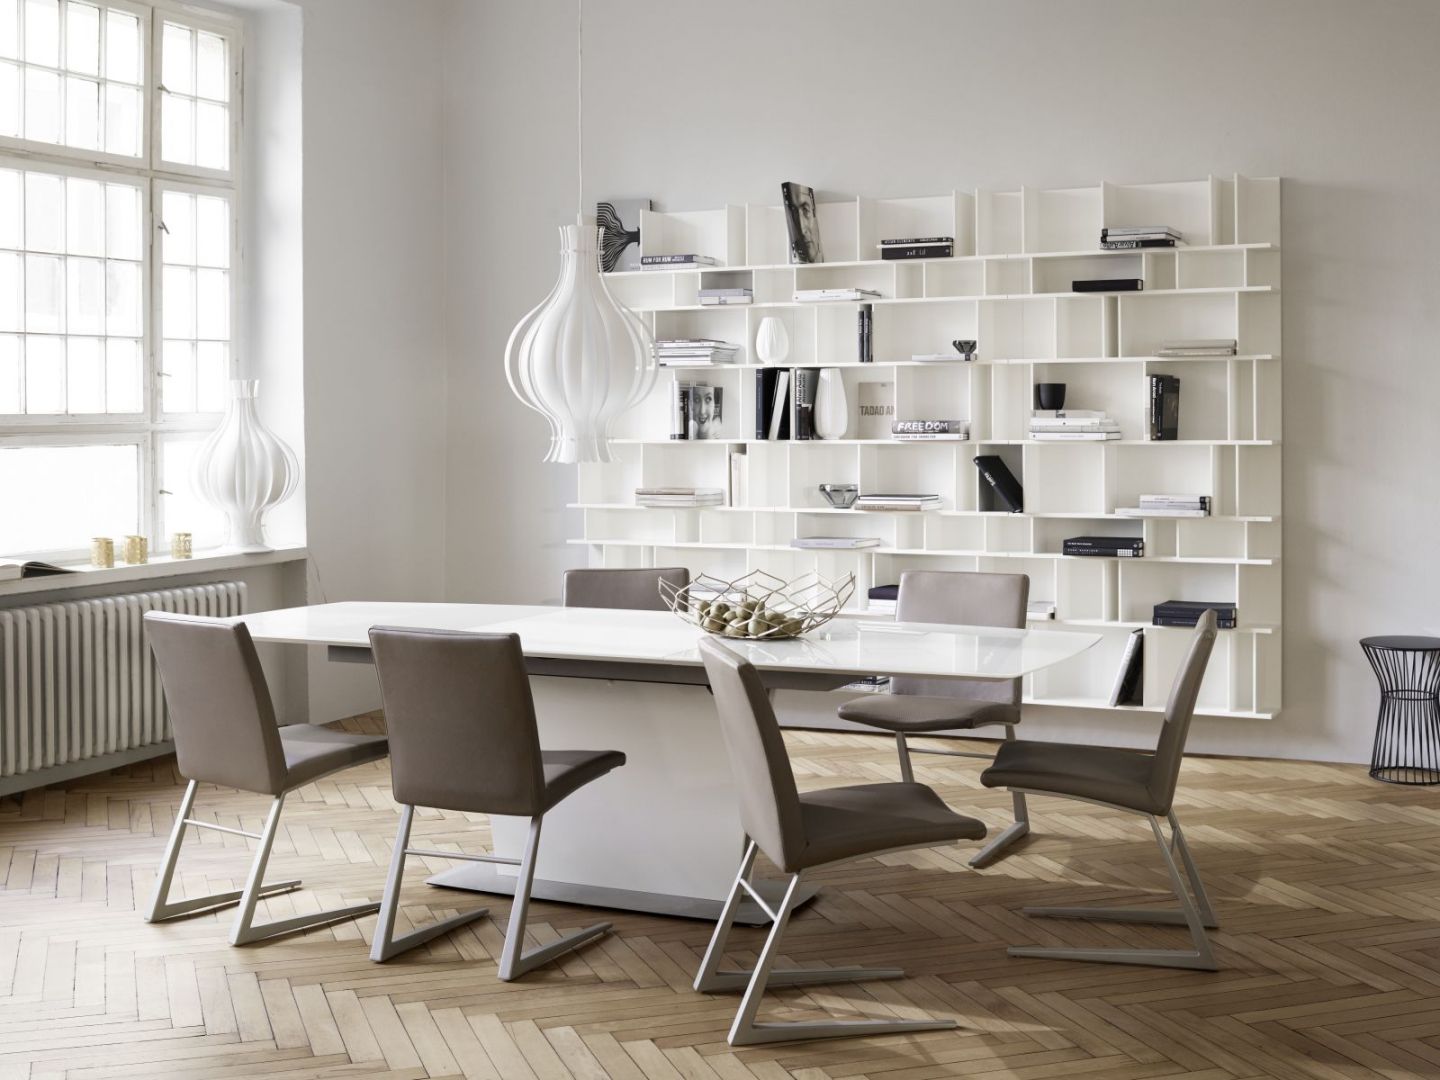 Białe meble pasują do wnętrz inspirowanych skandynawskim minimalizmem. Fot. BoConcept